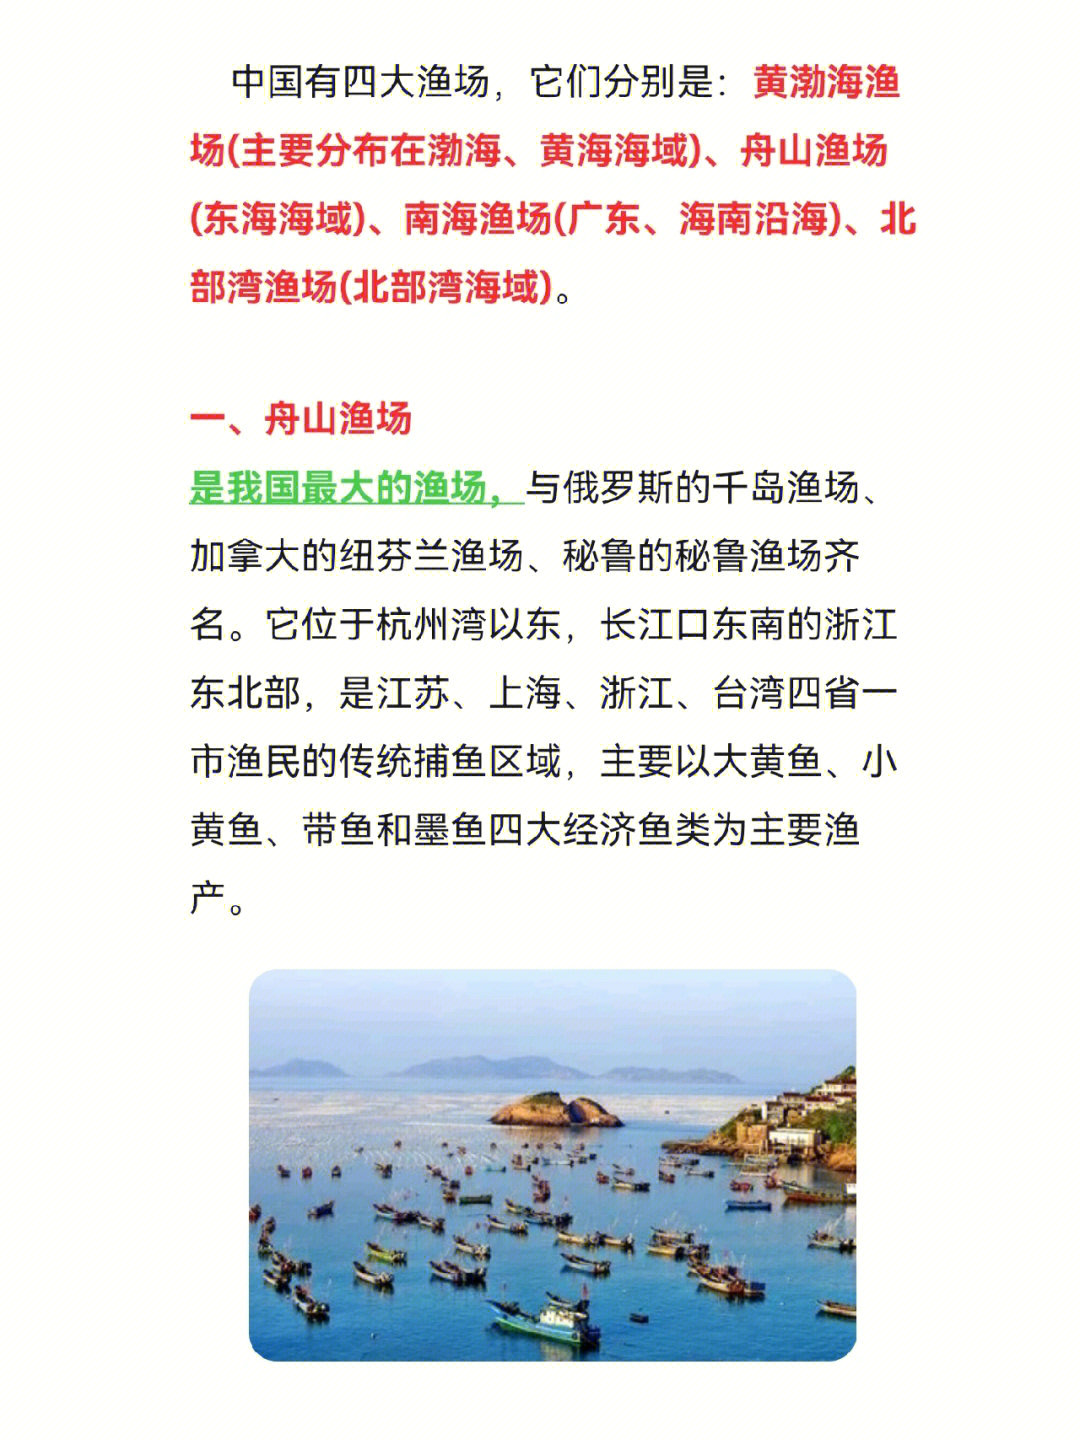 公基常识中国四大渔场考点汇总